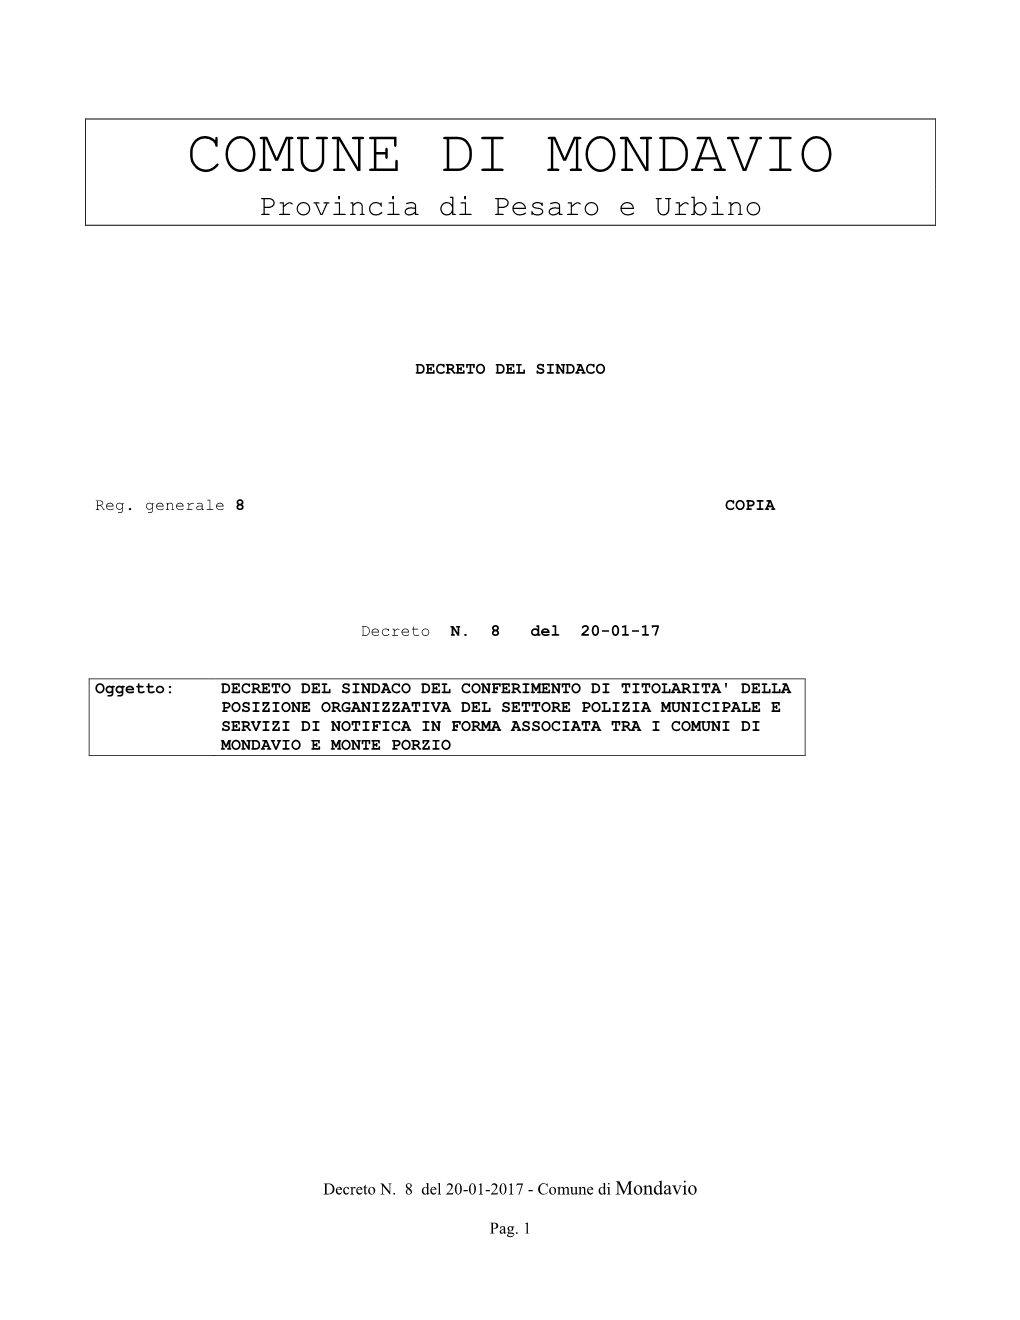 COMUNE DI MONDAVIO Provincia Di Pesaro E Urbino